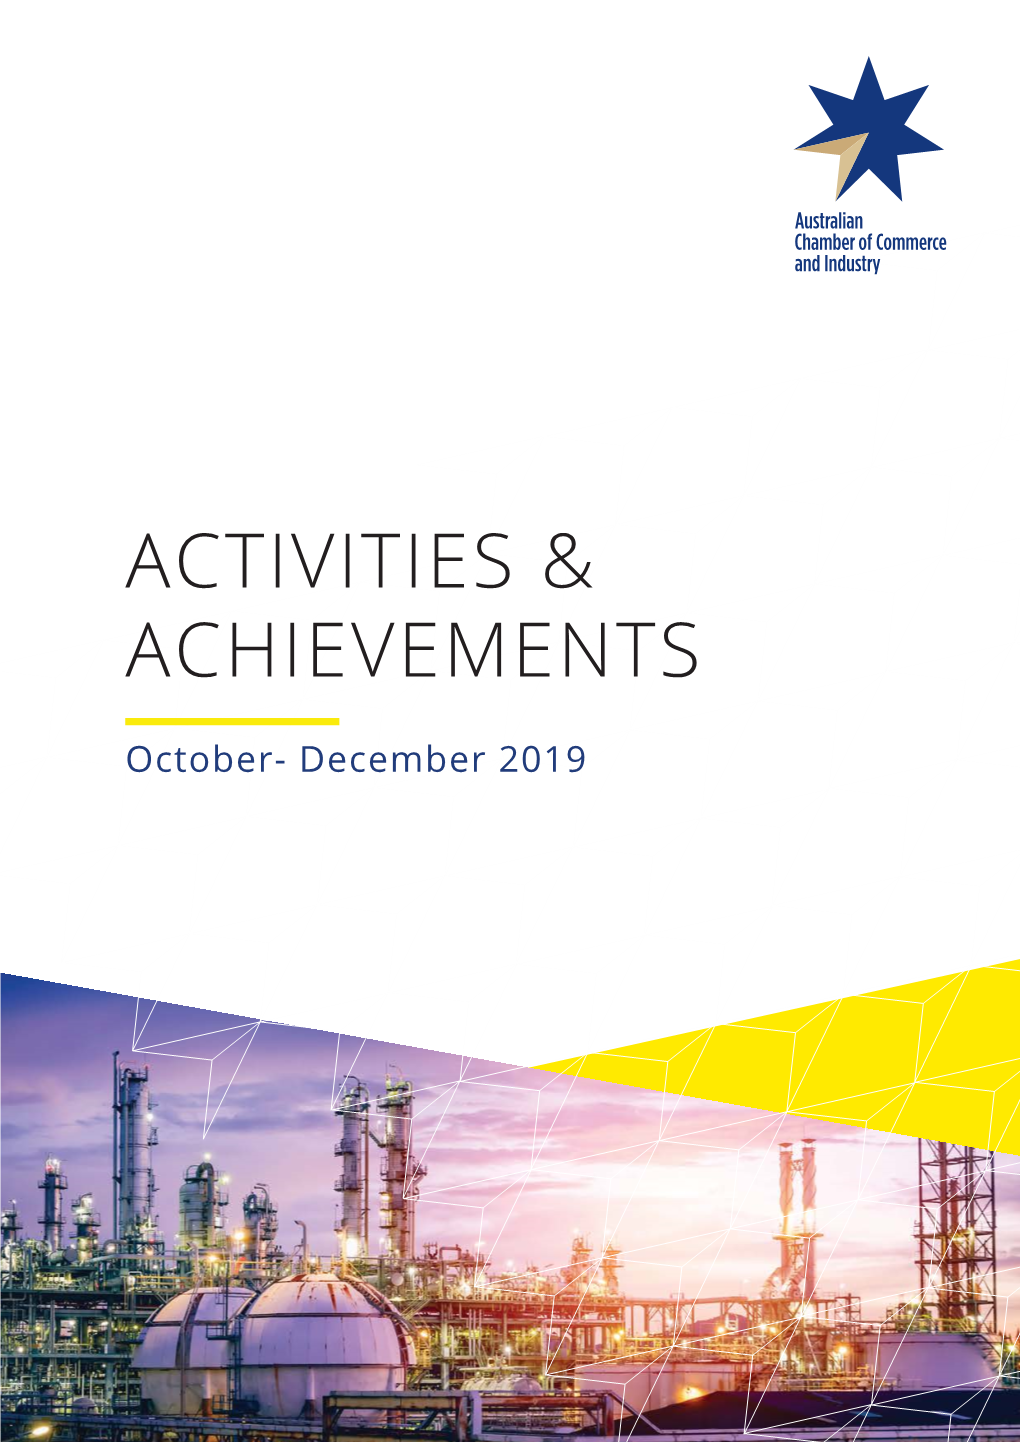 Activities & Achievements Q4 2019 PDF 2.84 MB